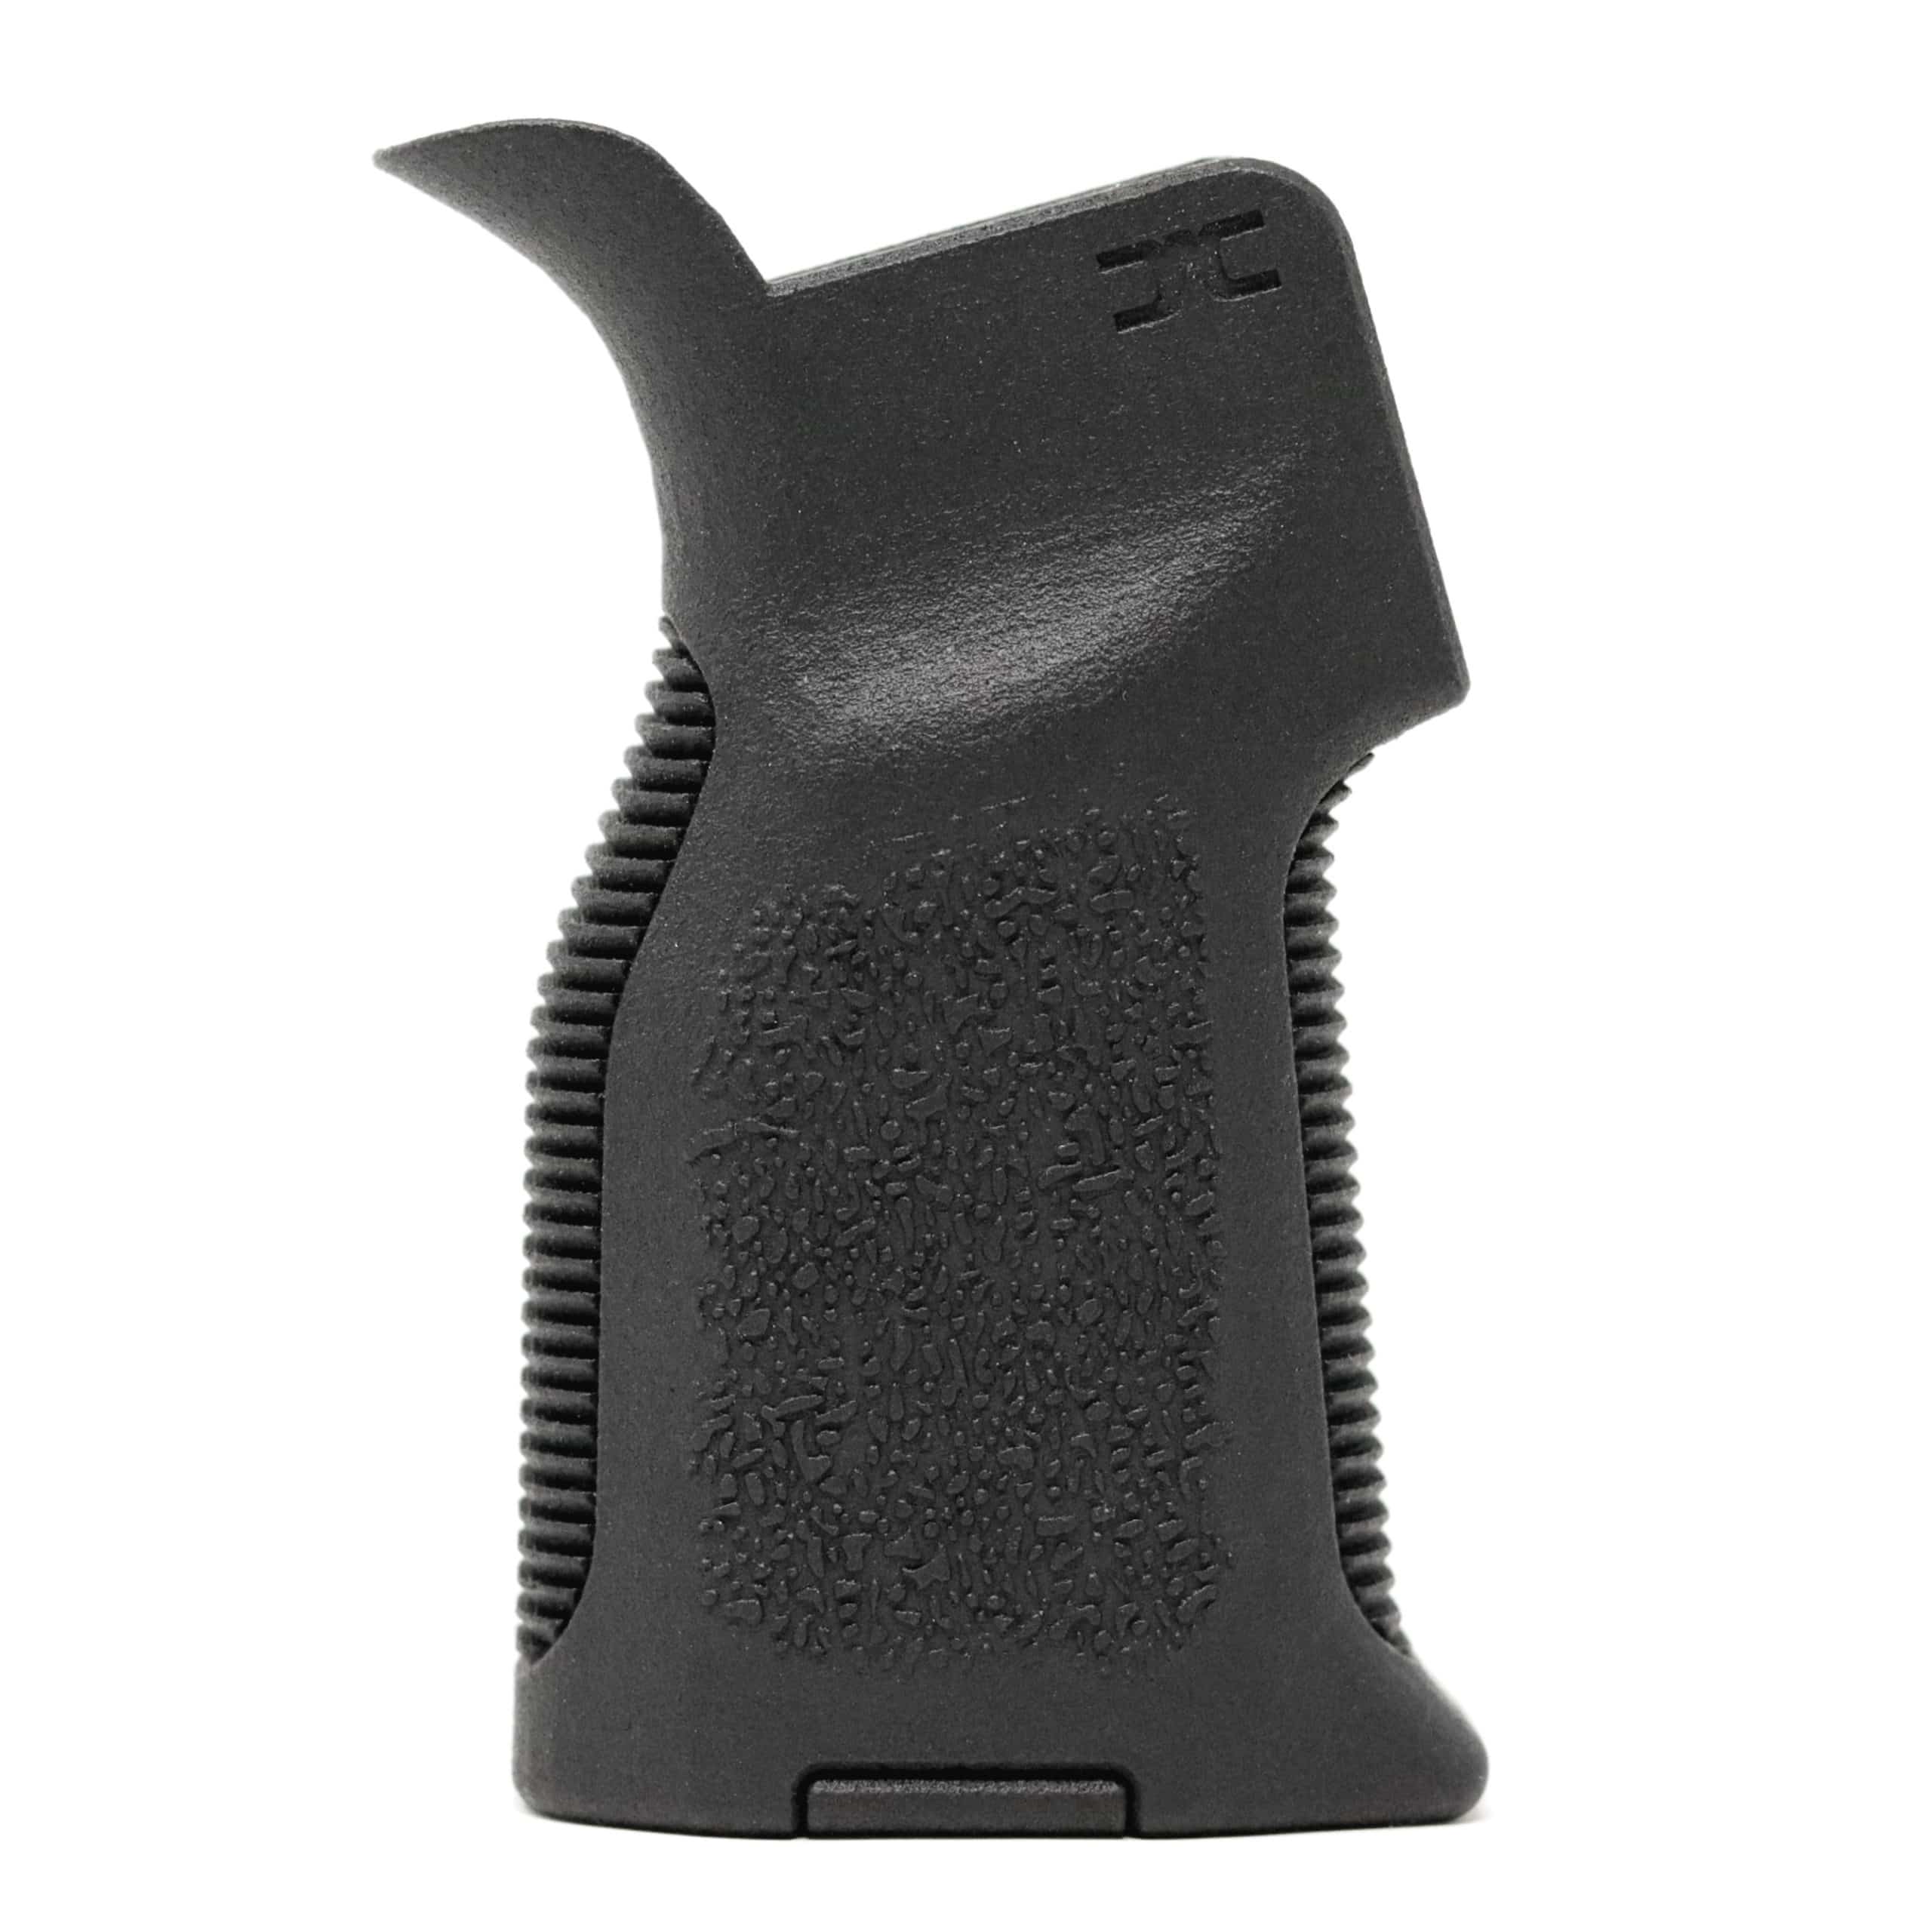 Mini Grip V1 – McLeod Precision